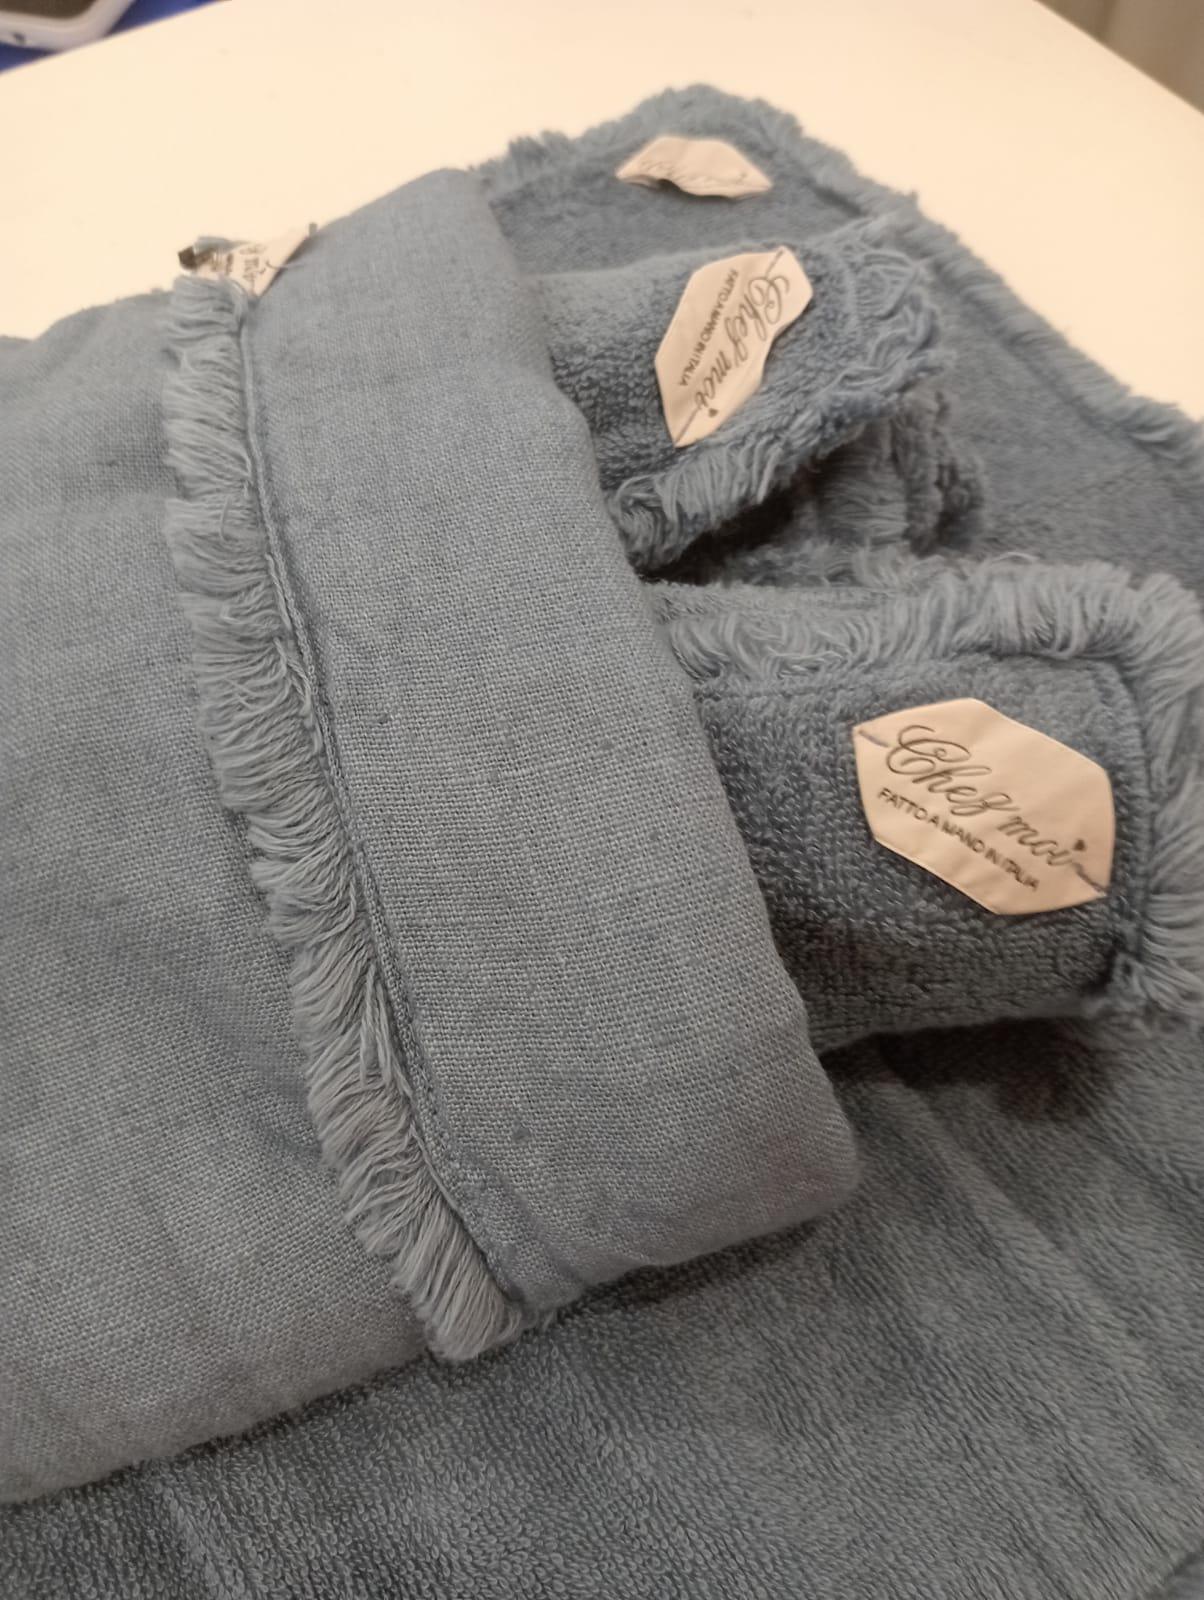 Lavette set da 3 asciugamani bagno con elegante sacchetto di lino, colore: Fiordaliso, 100% Made in Italy - Chez Moi - MARIKA DE PAOLA - HOME DECOR